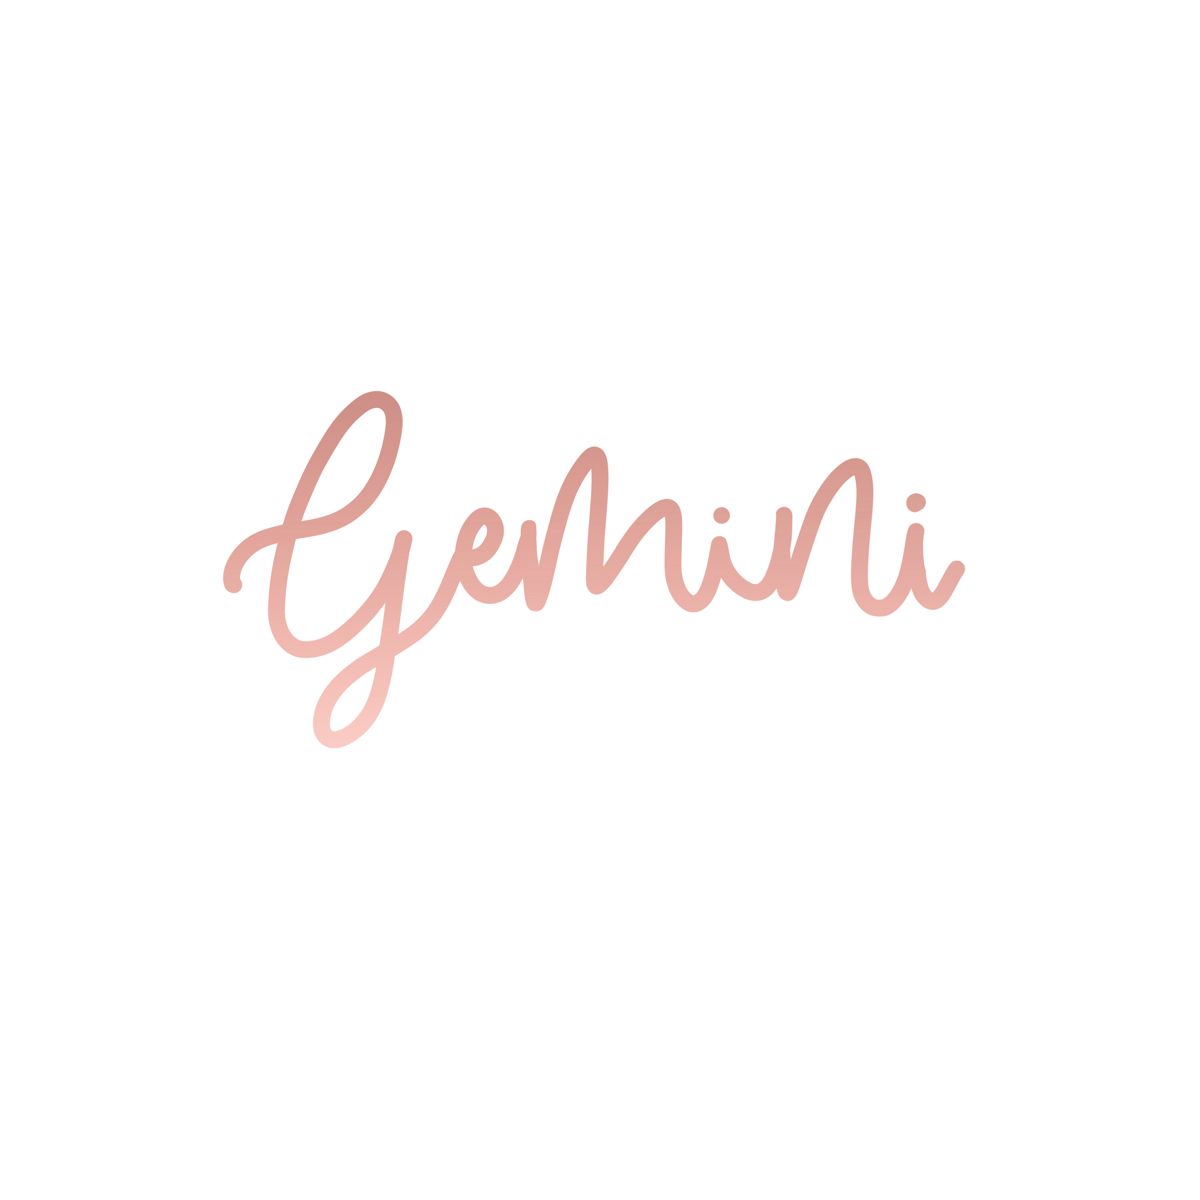 Gemini. Gemini, Gemini wallpaper, Gemini star sign